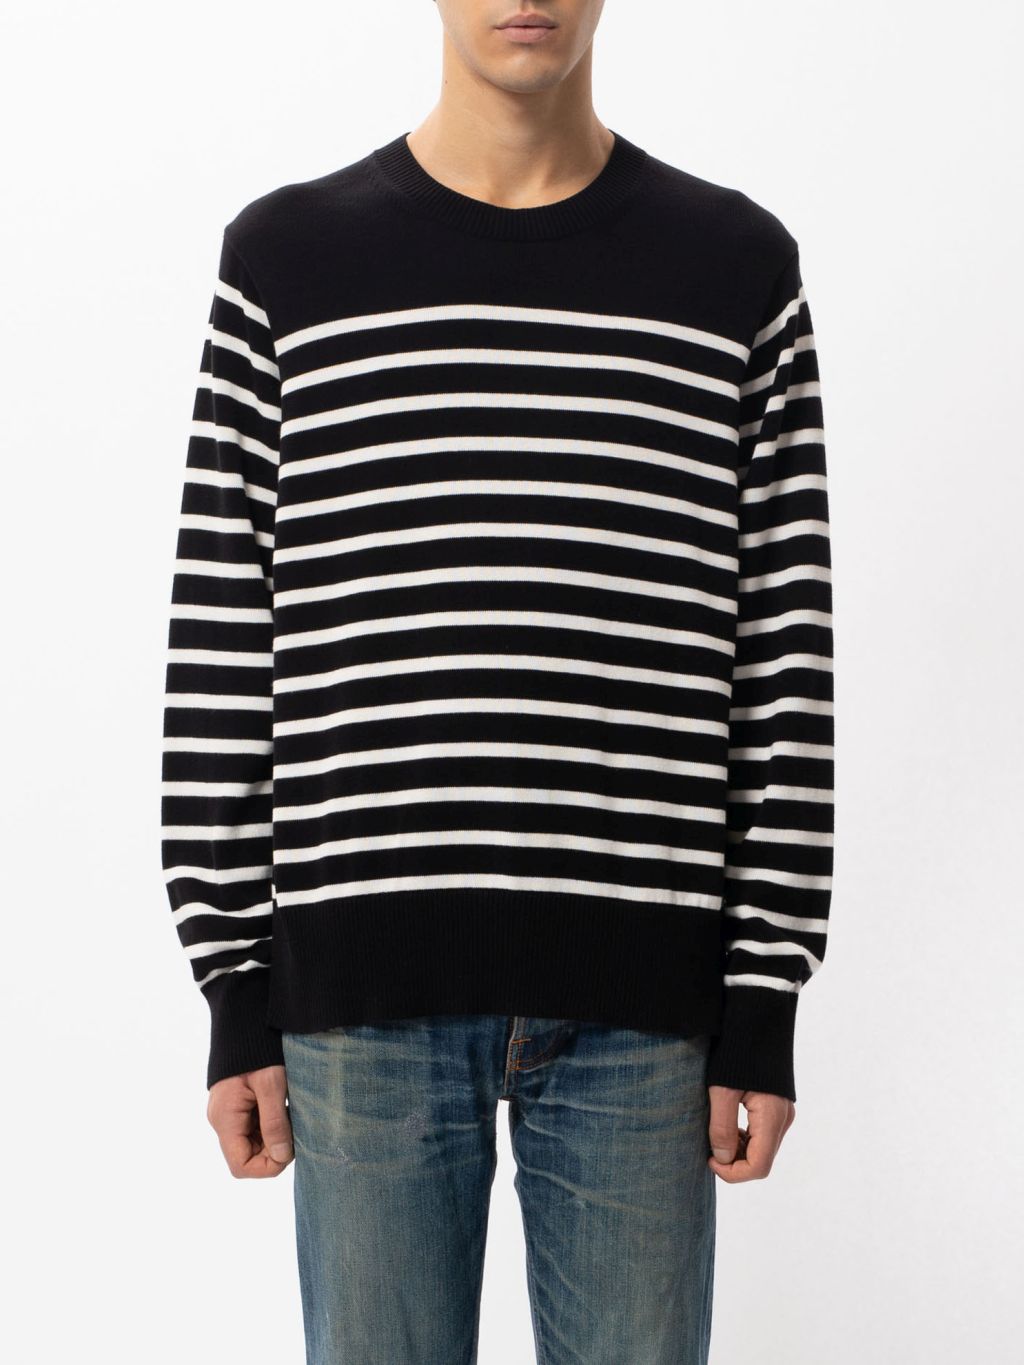 Hampus Striped Sweater black/white S